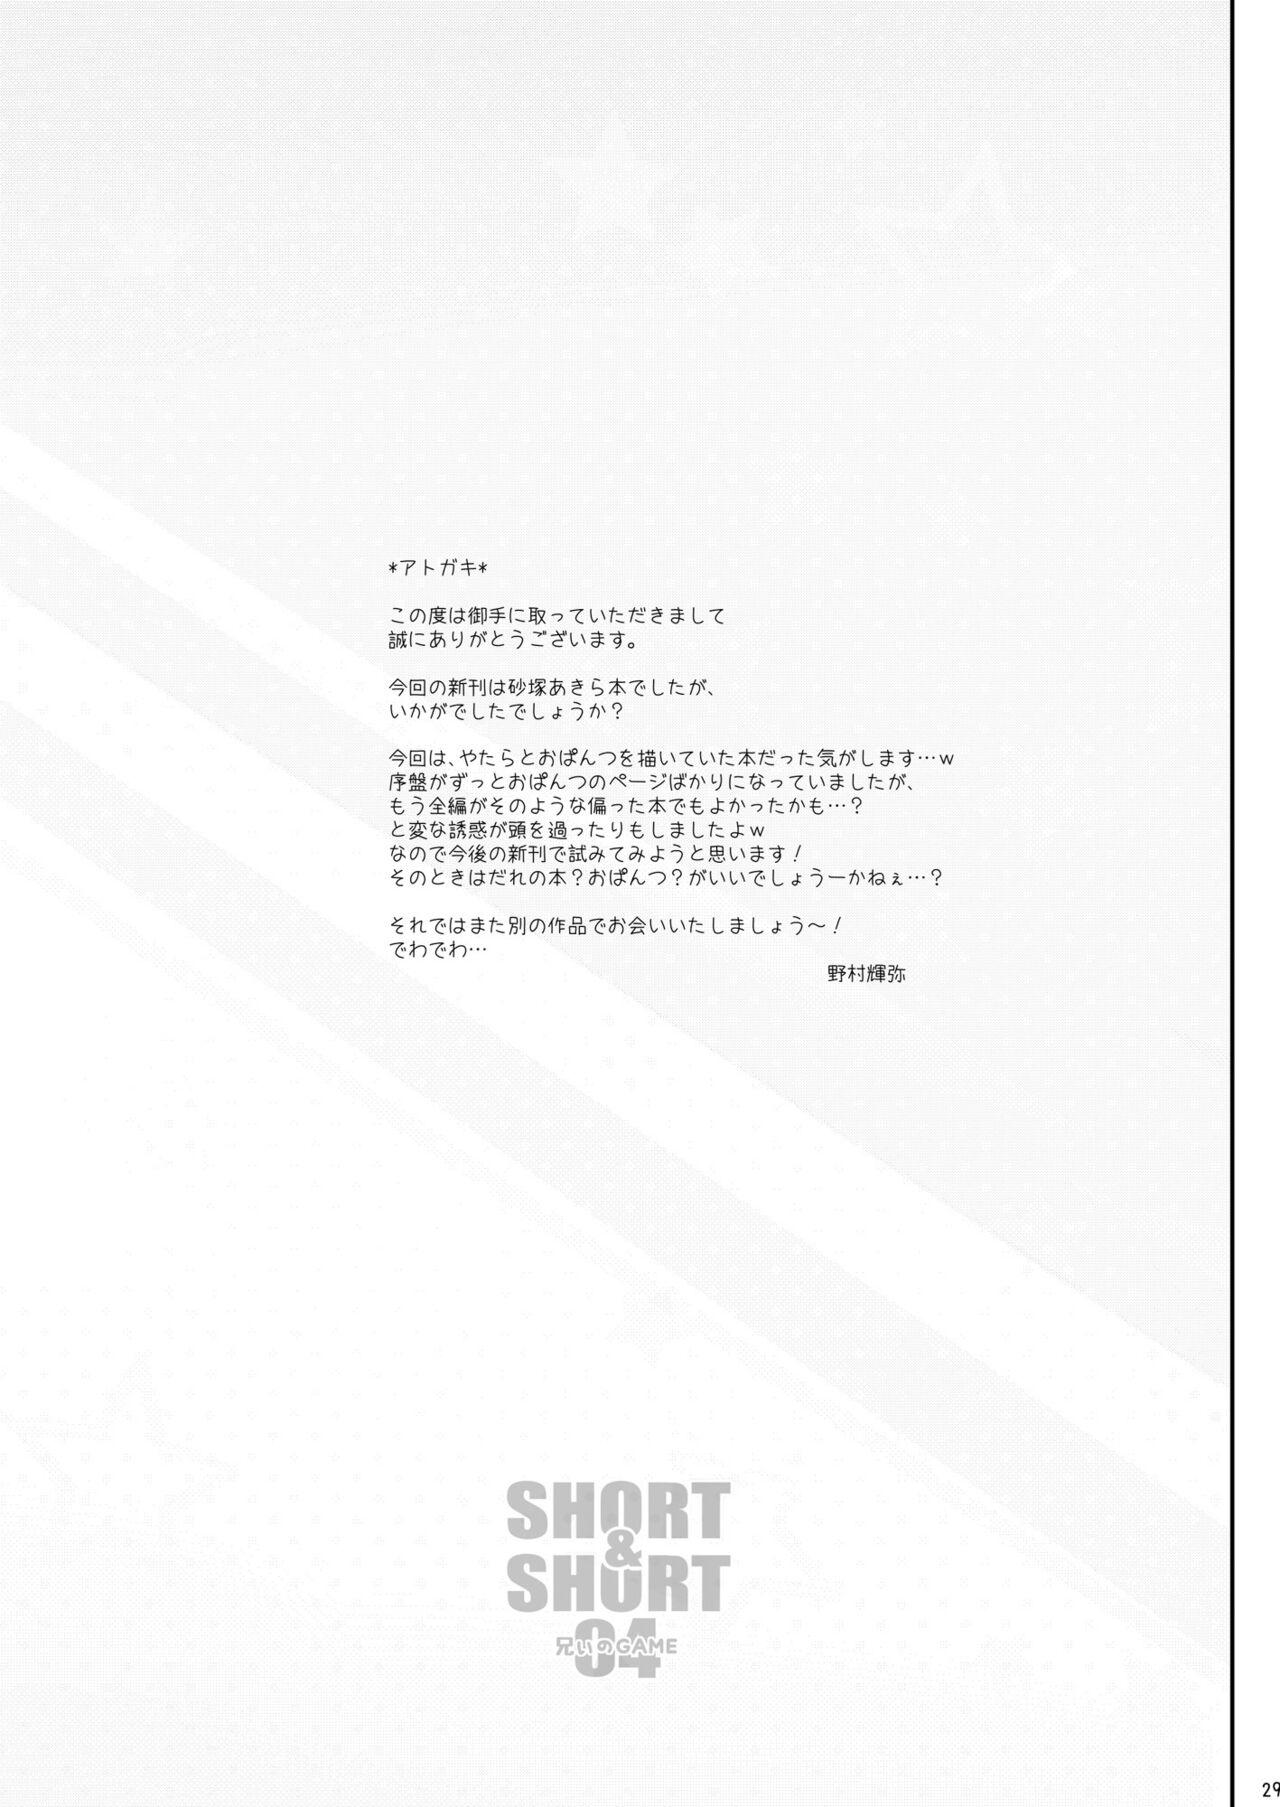 SHORT&SHORT 04 Nii no GAME 28